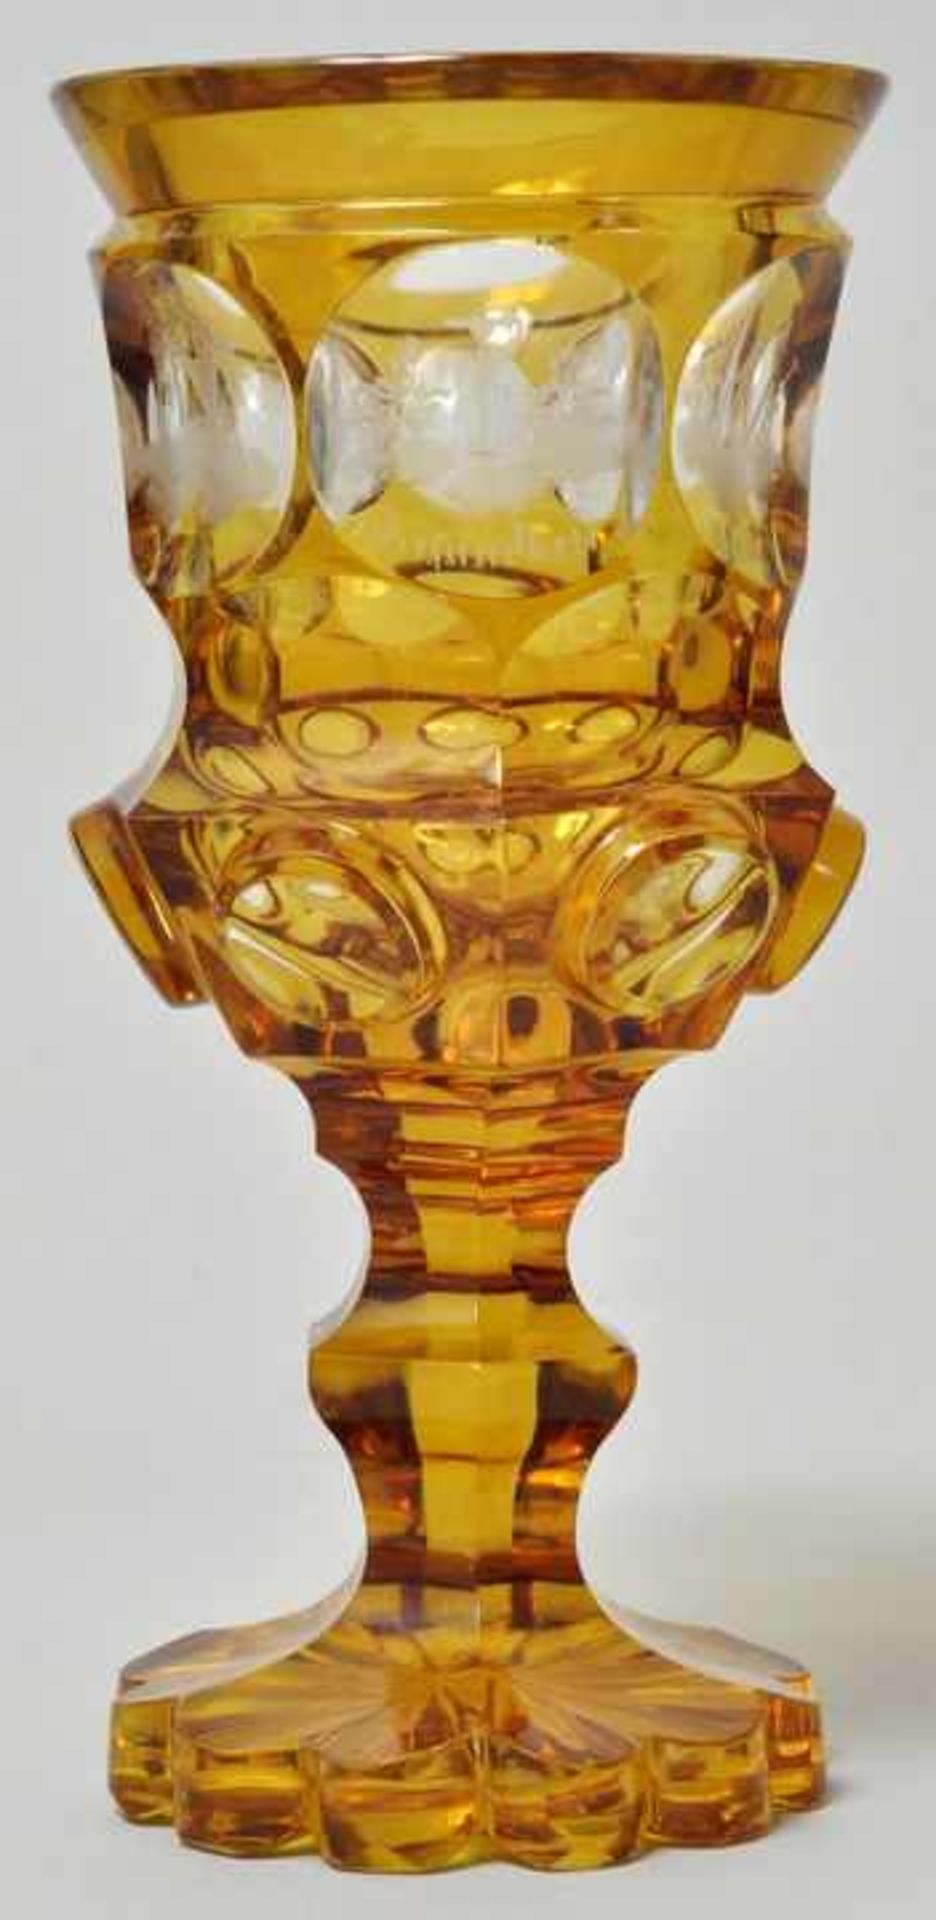 Pokalglas, Böhmen, dat. 1842 Farbloses, schliffverziertes Glas mit Gellbeize und Gravur. Passiger